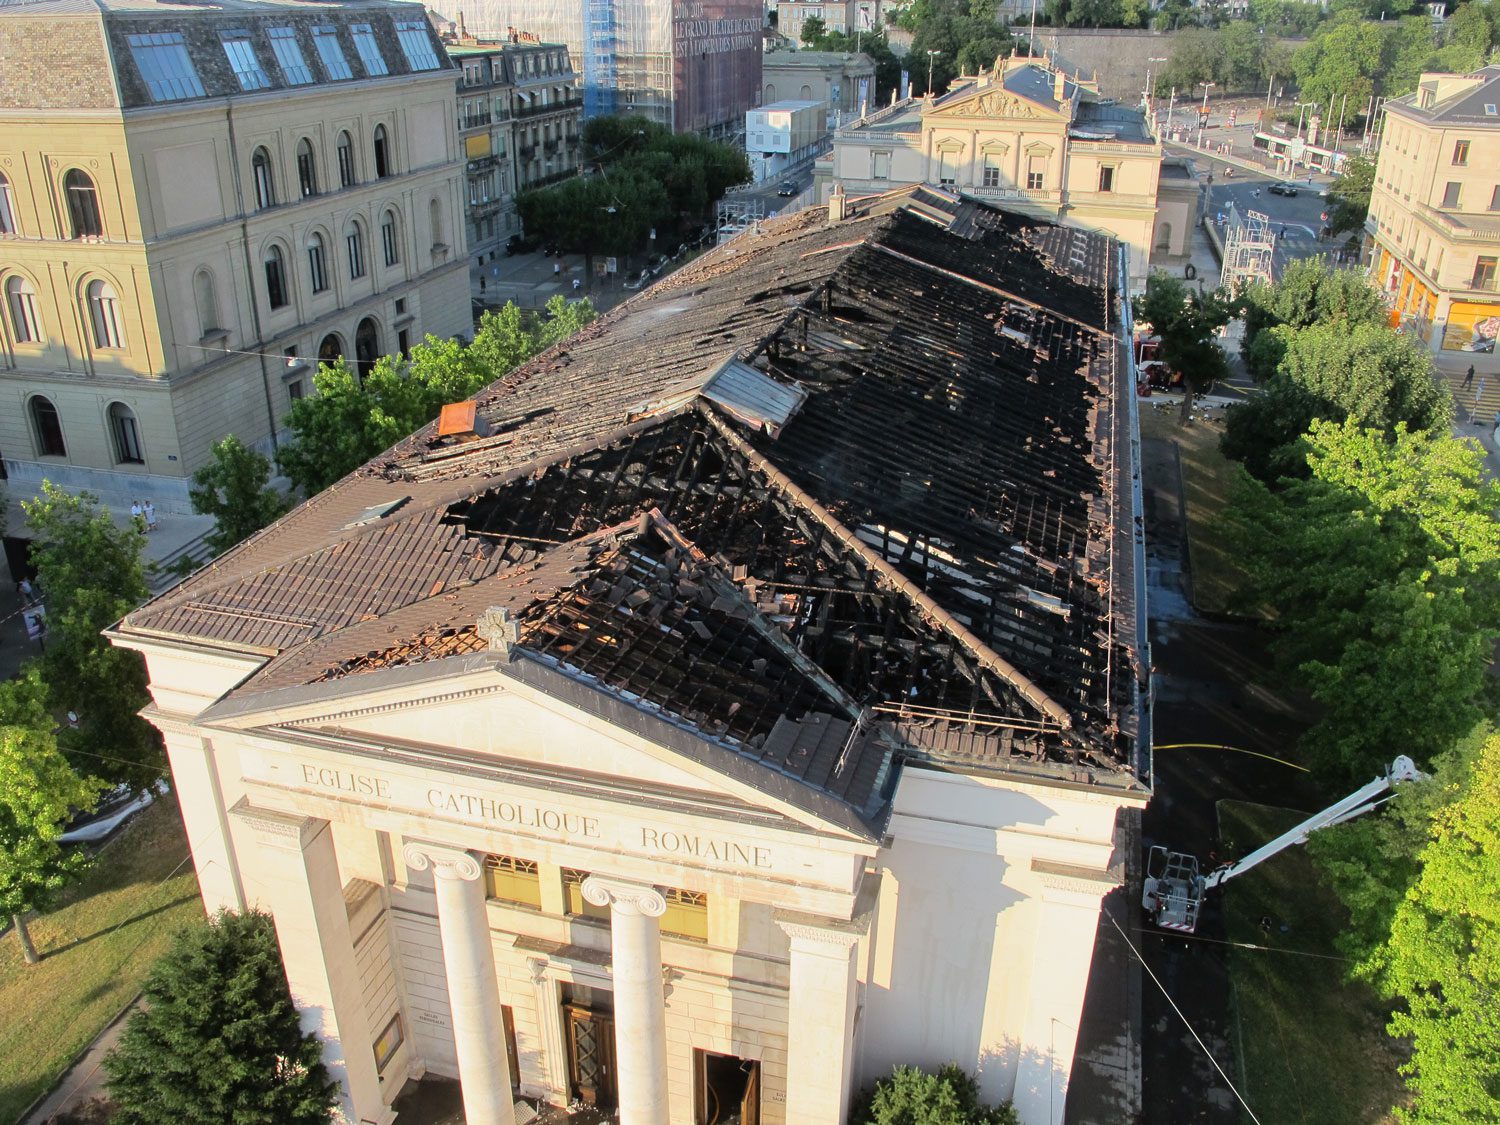 Incendie à l'église du Sacré-Cœur juillet 2018 Genève